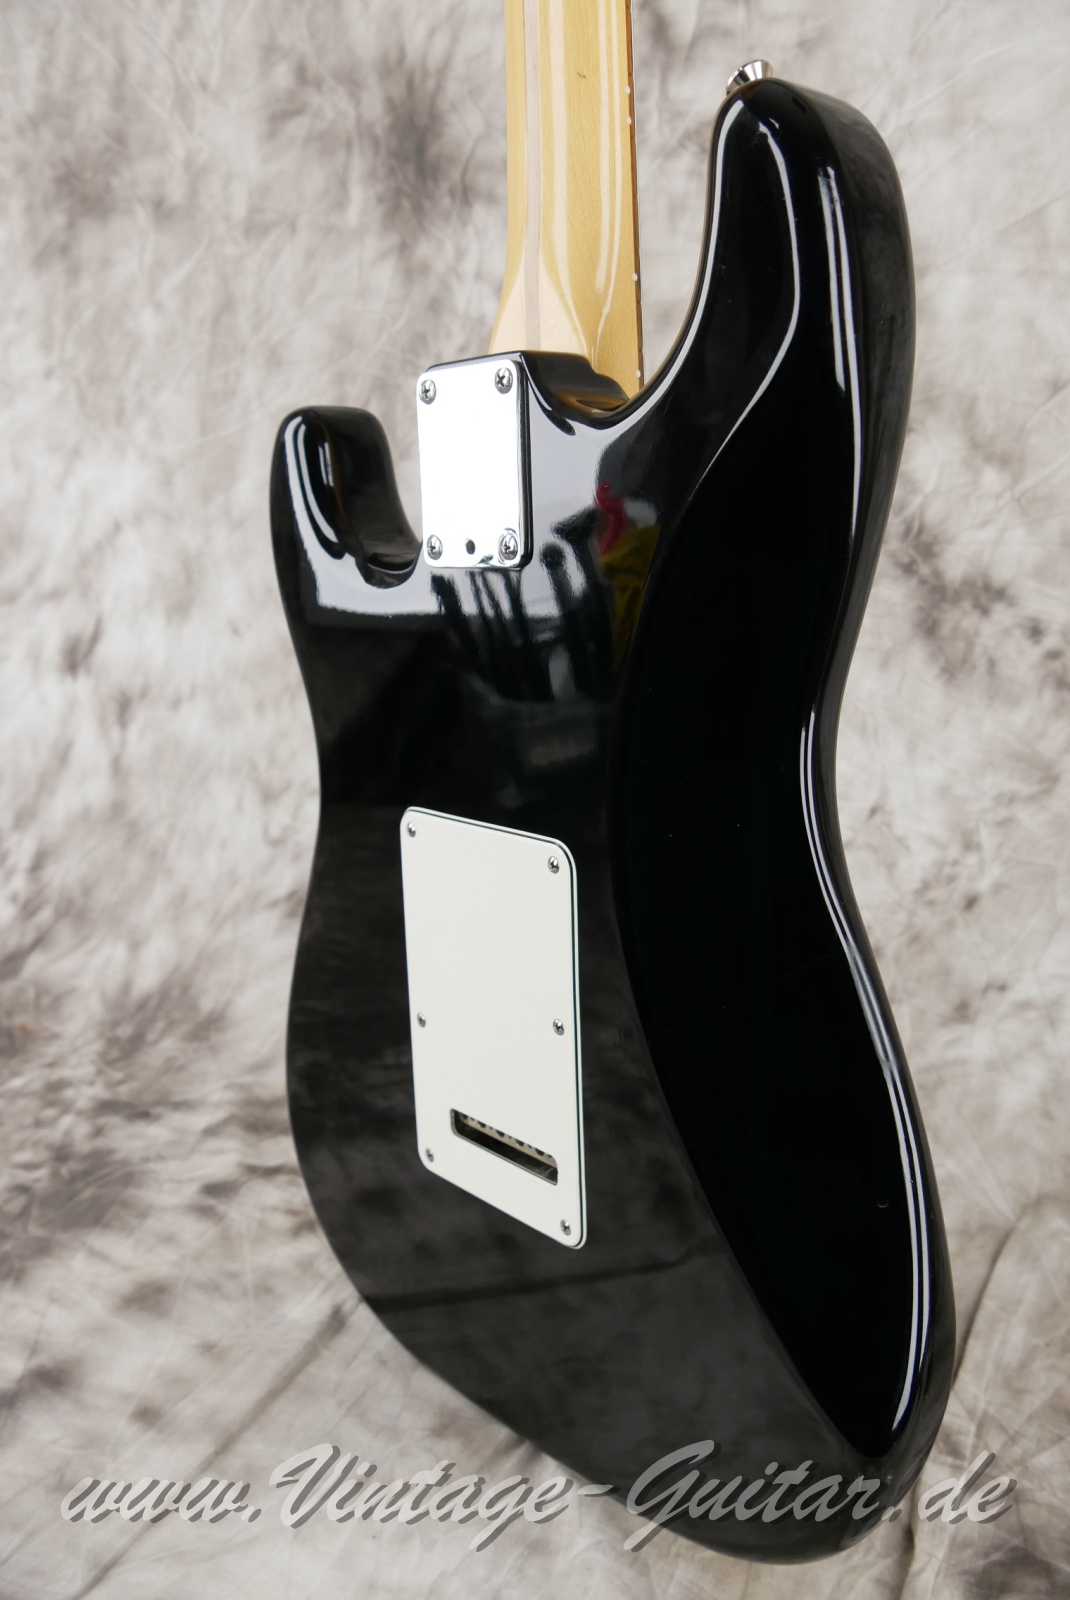 Fender-Stratocaster-American-Standard-1987-black-008.JPG